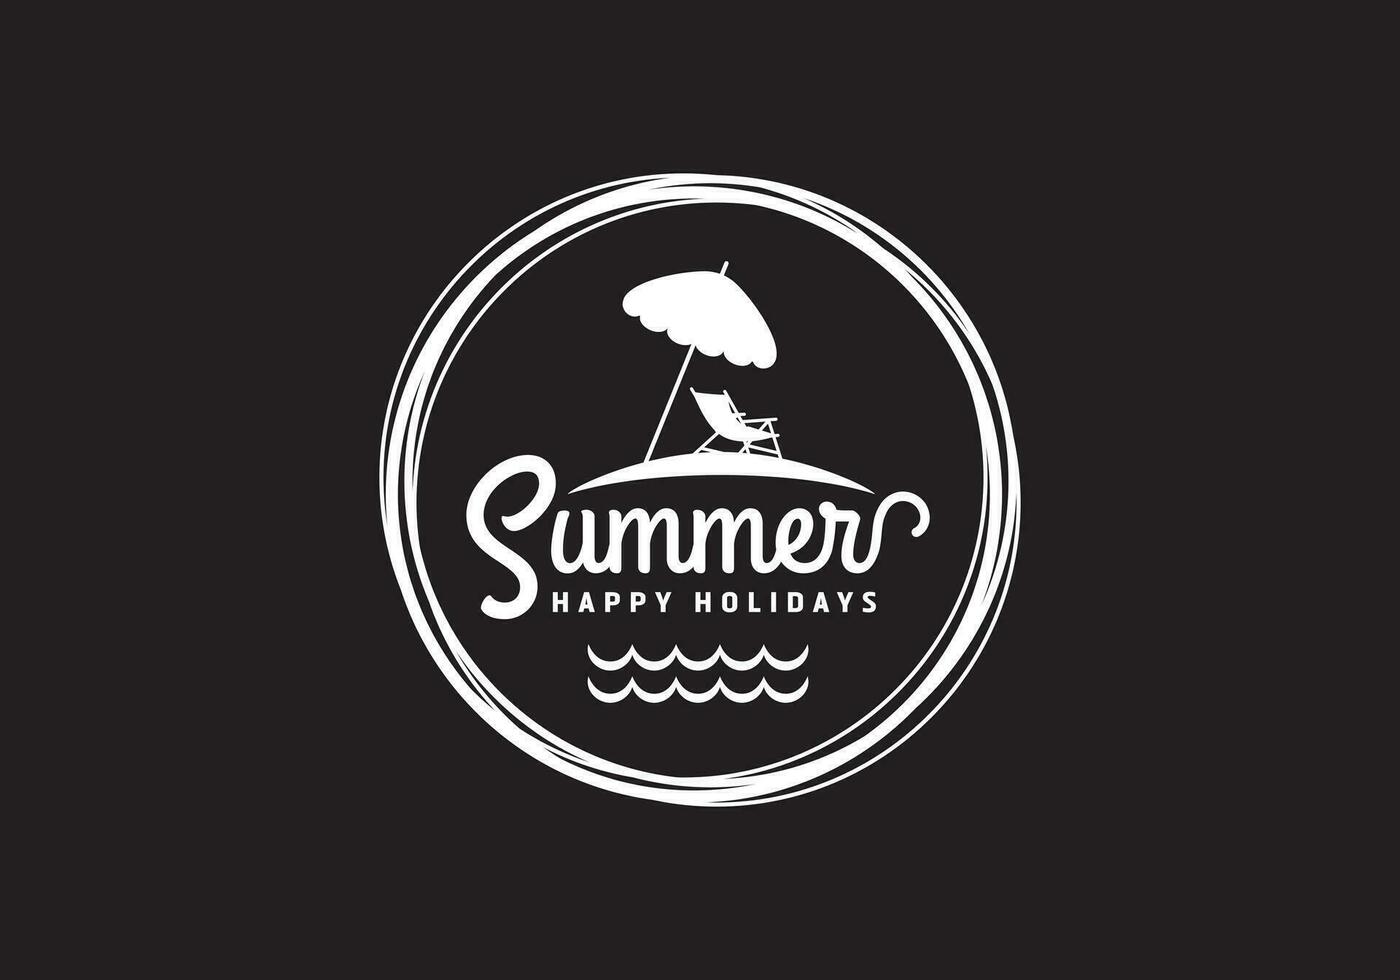 detta är sommar och strand logotyp design vektor